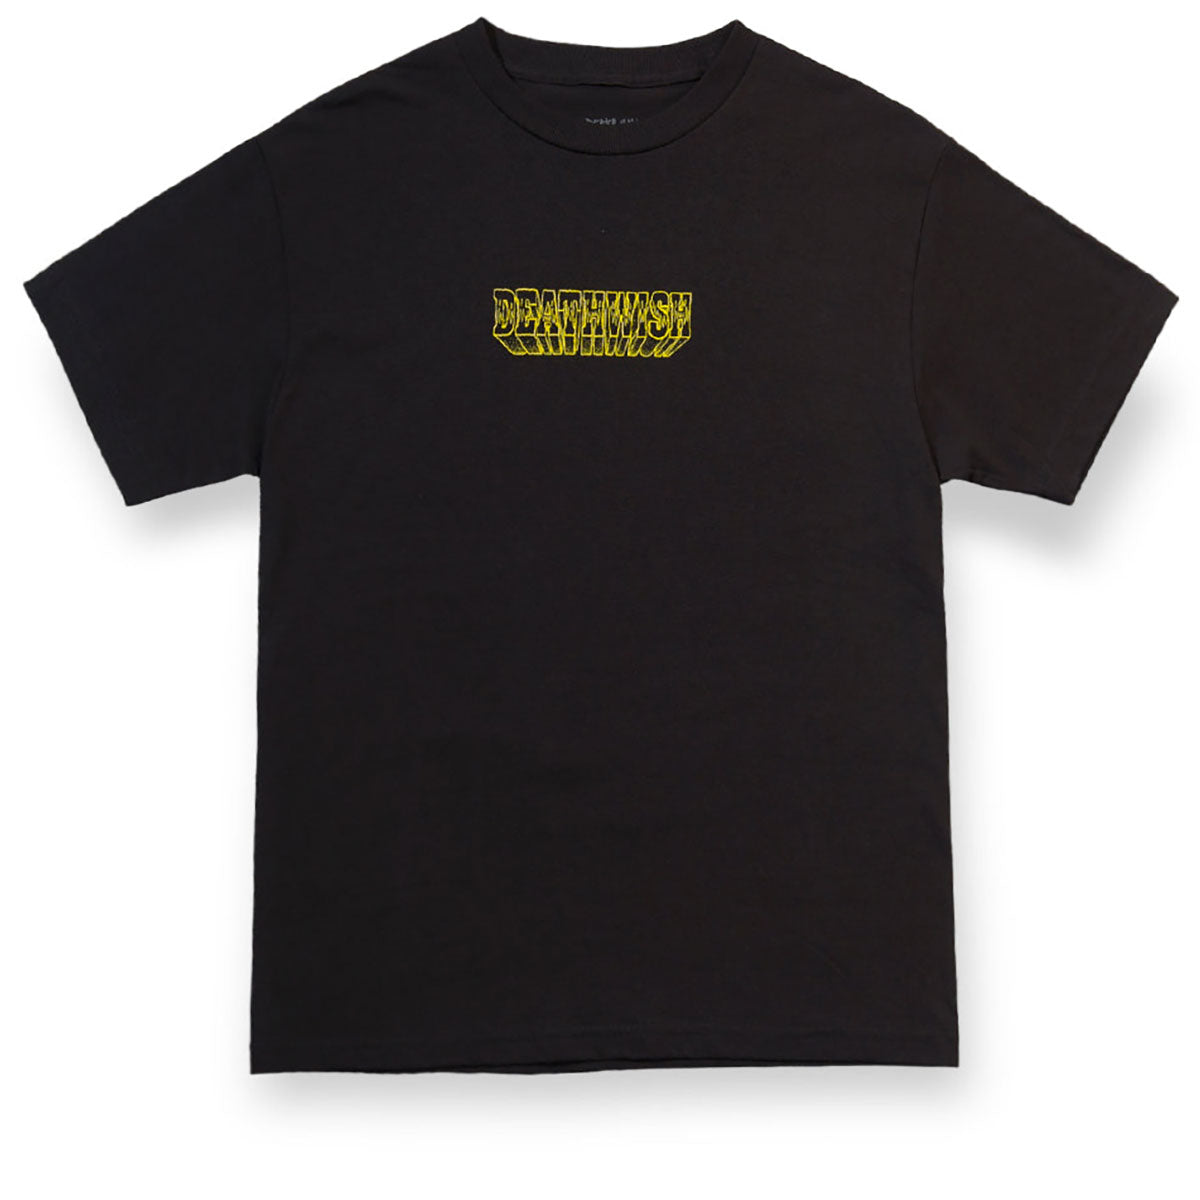 Deathwish 423 T-Shirt - Black image 2